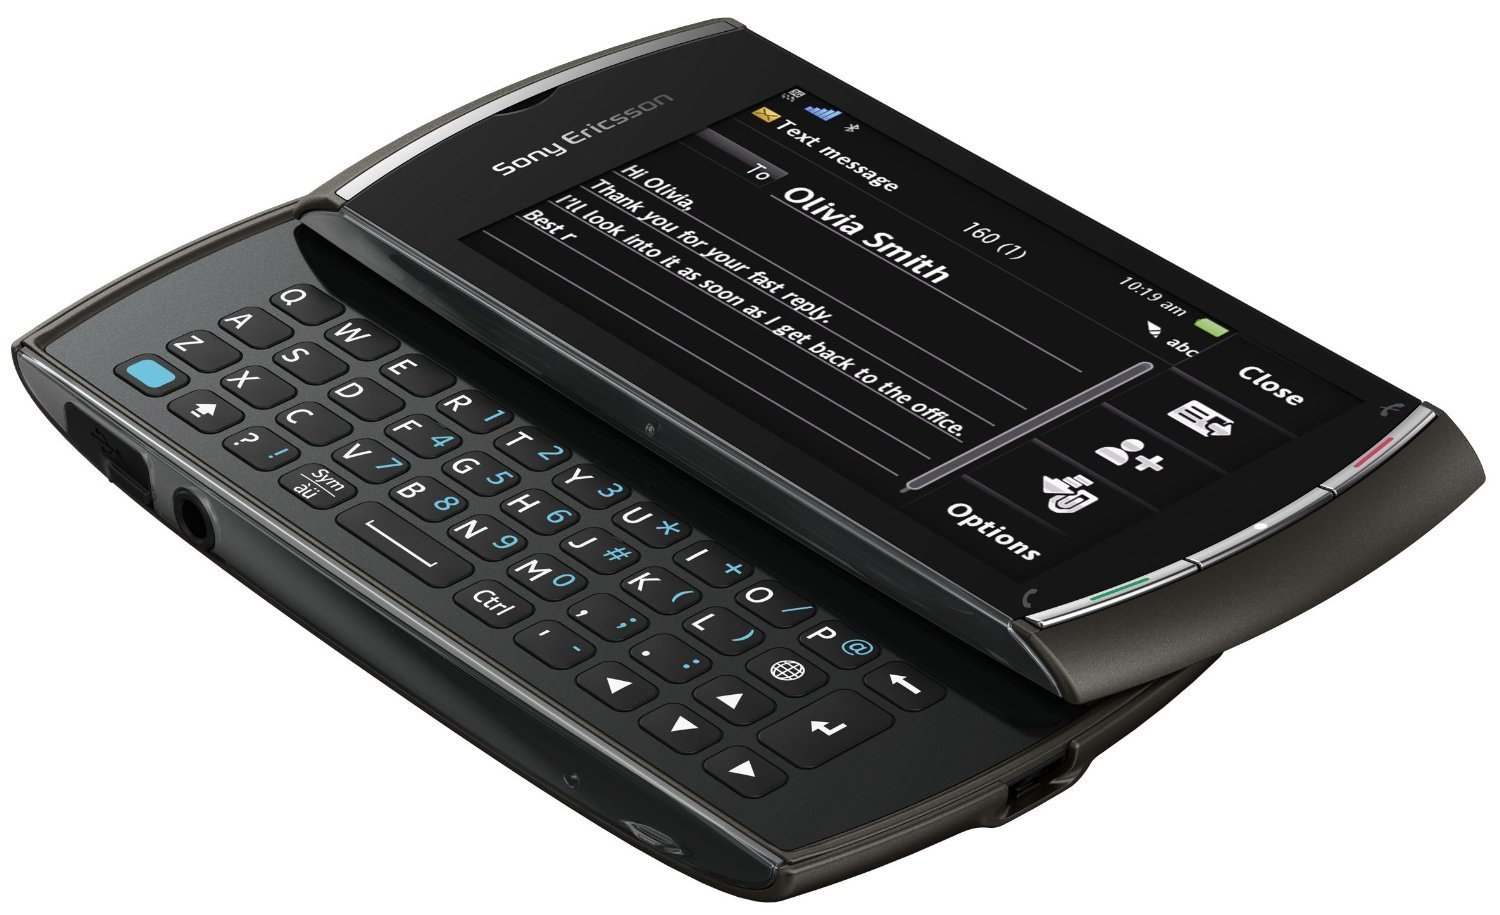 Sony Ericsson presenta el nuevo Vivaz Pro con pantalla tactil y teclado qwerty